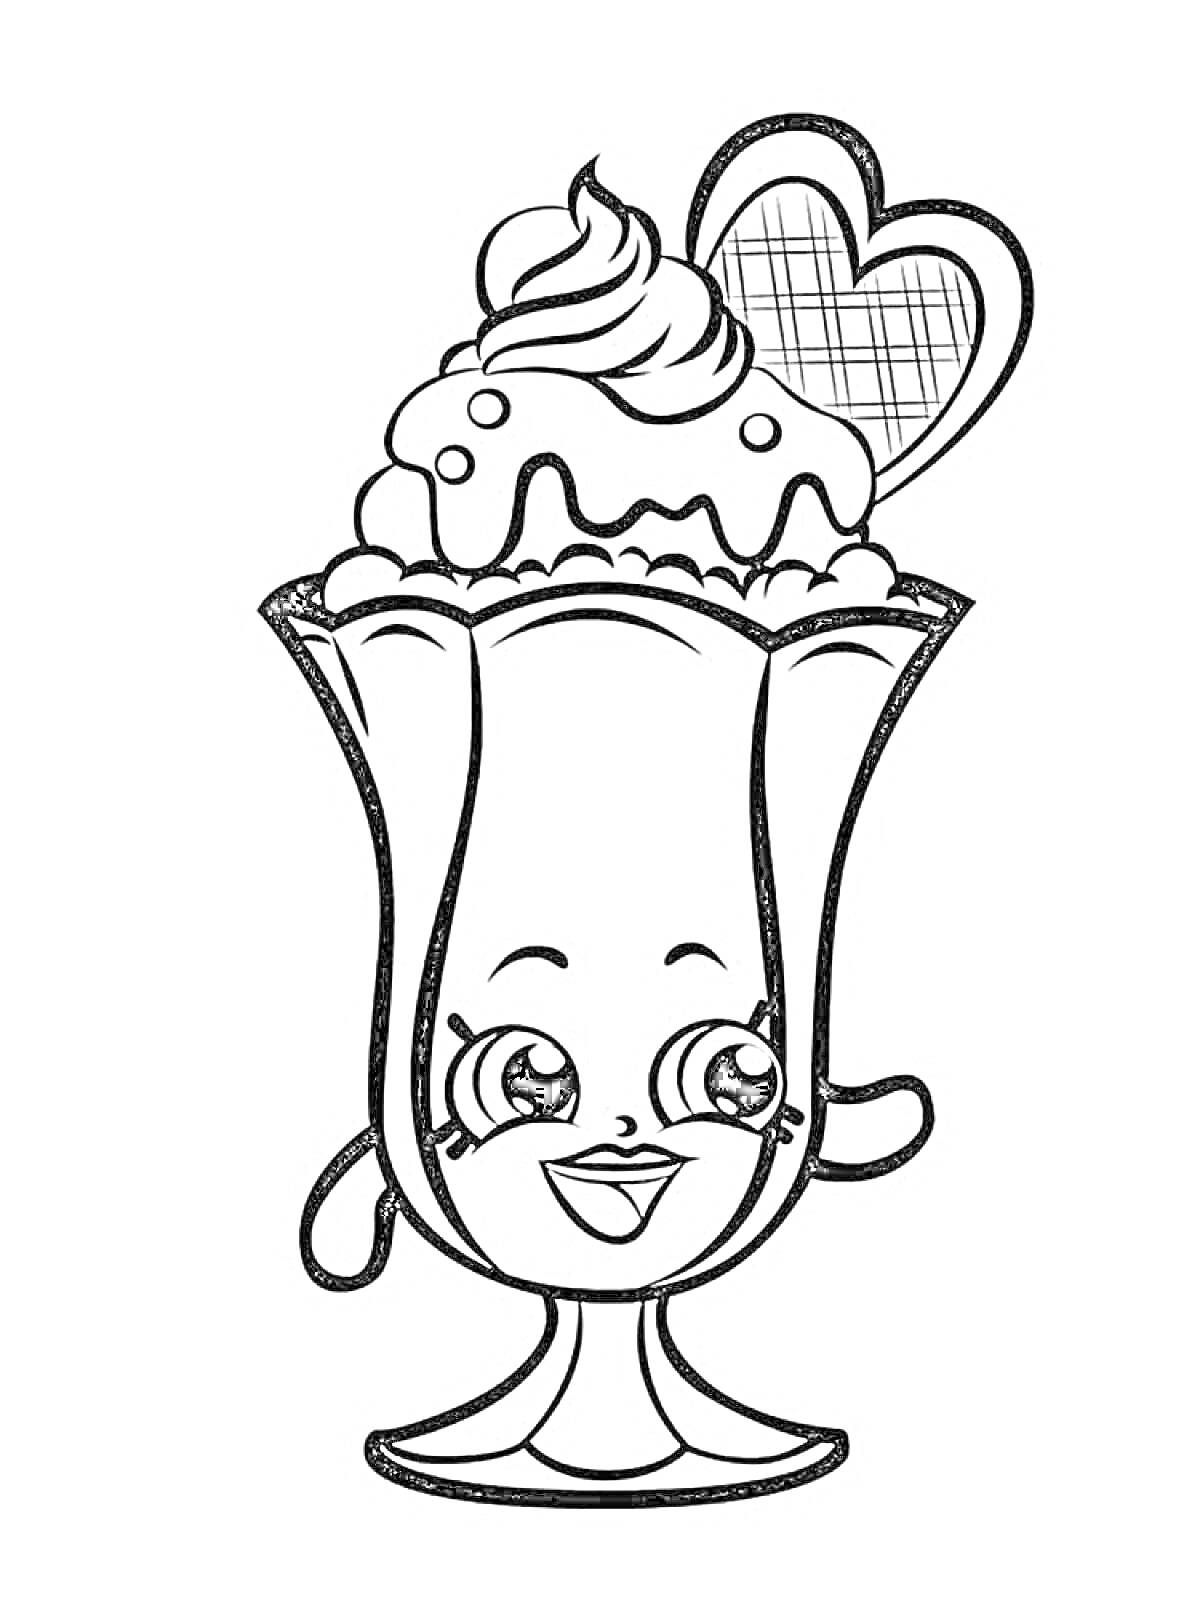 Морозный десерт с взбитыми сливками и вафлей в виде сердечка с улыбающимся лицом